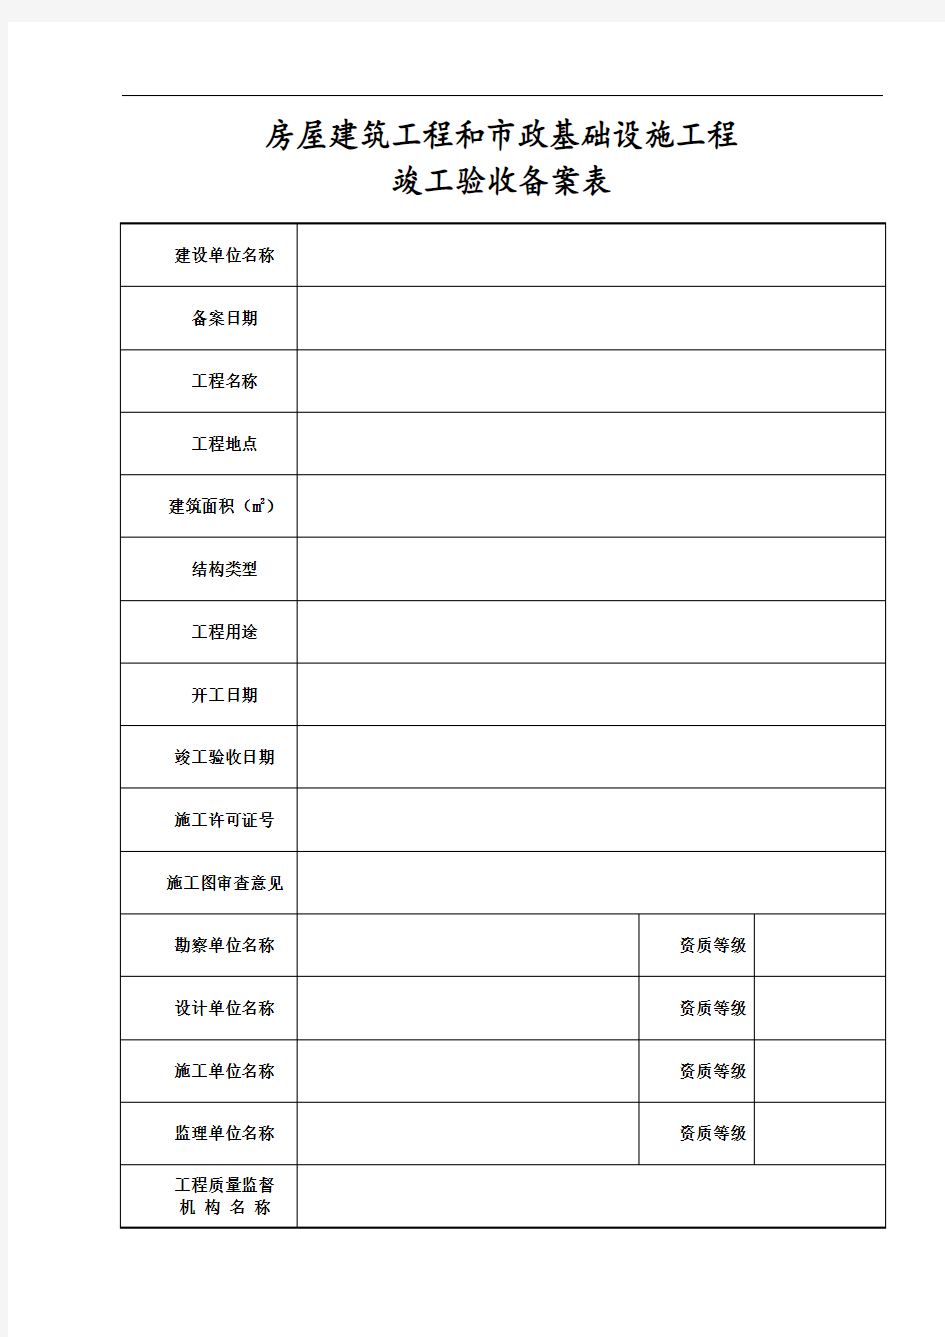 广东省统一用表《竣工验收备案表》填写范例1